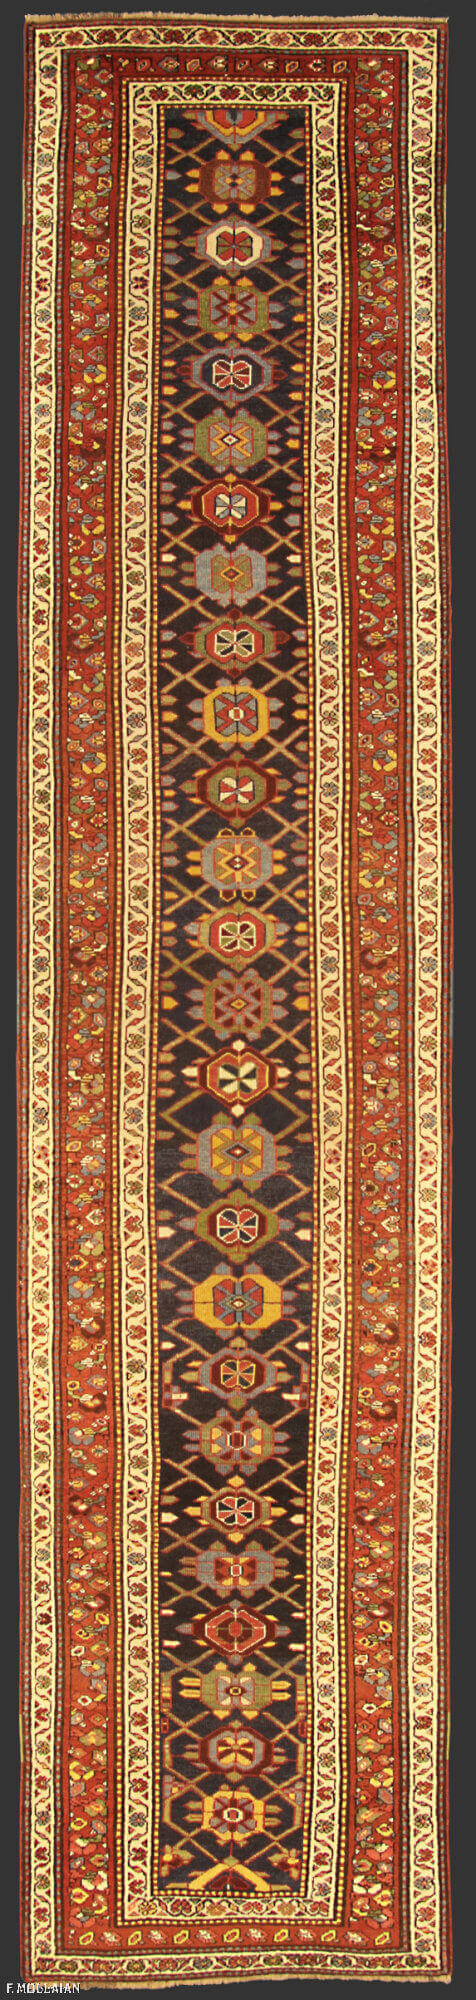 Antique Persian Varamin Runner n°:41473658